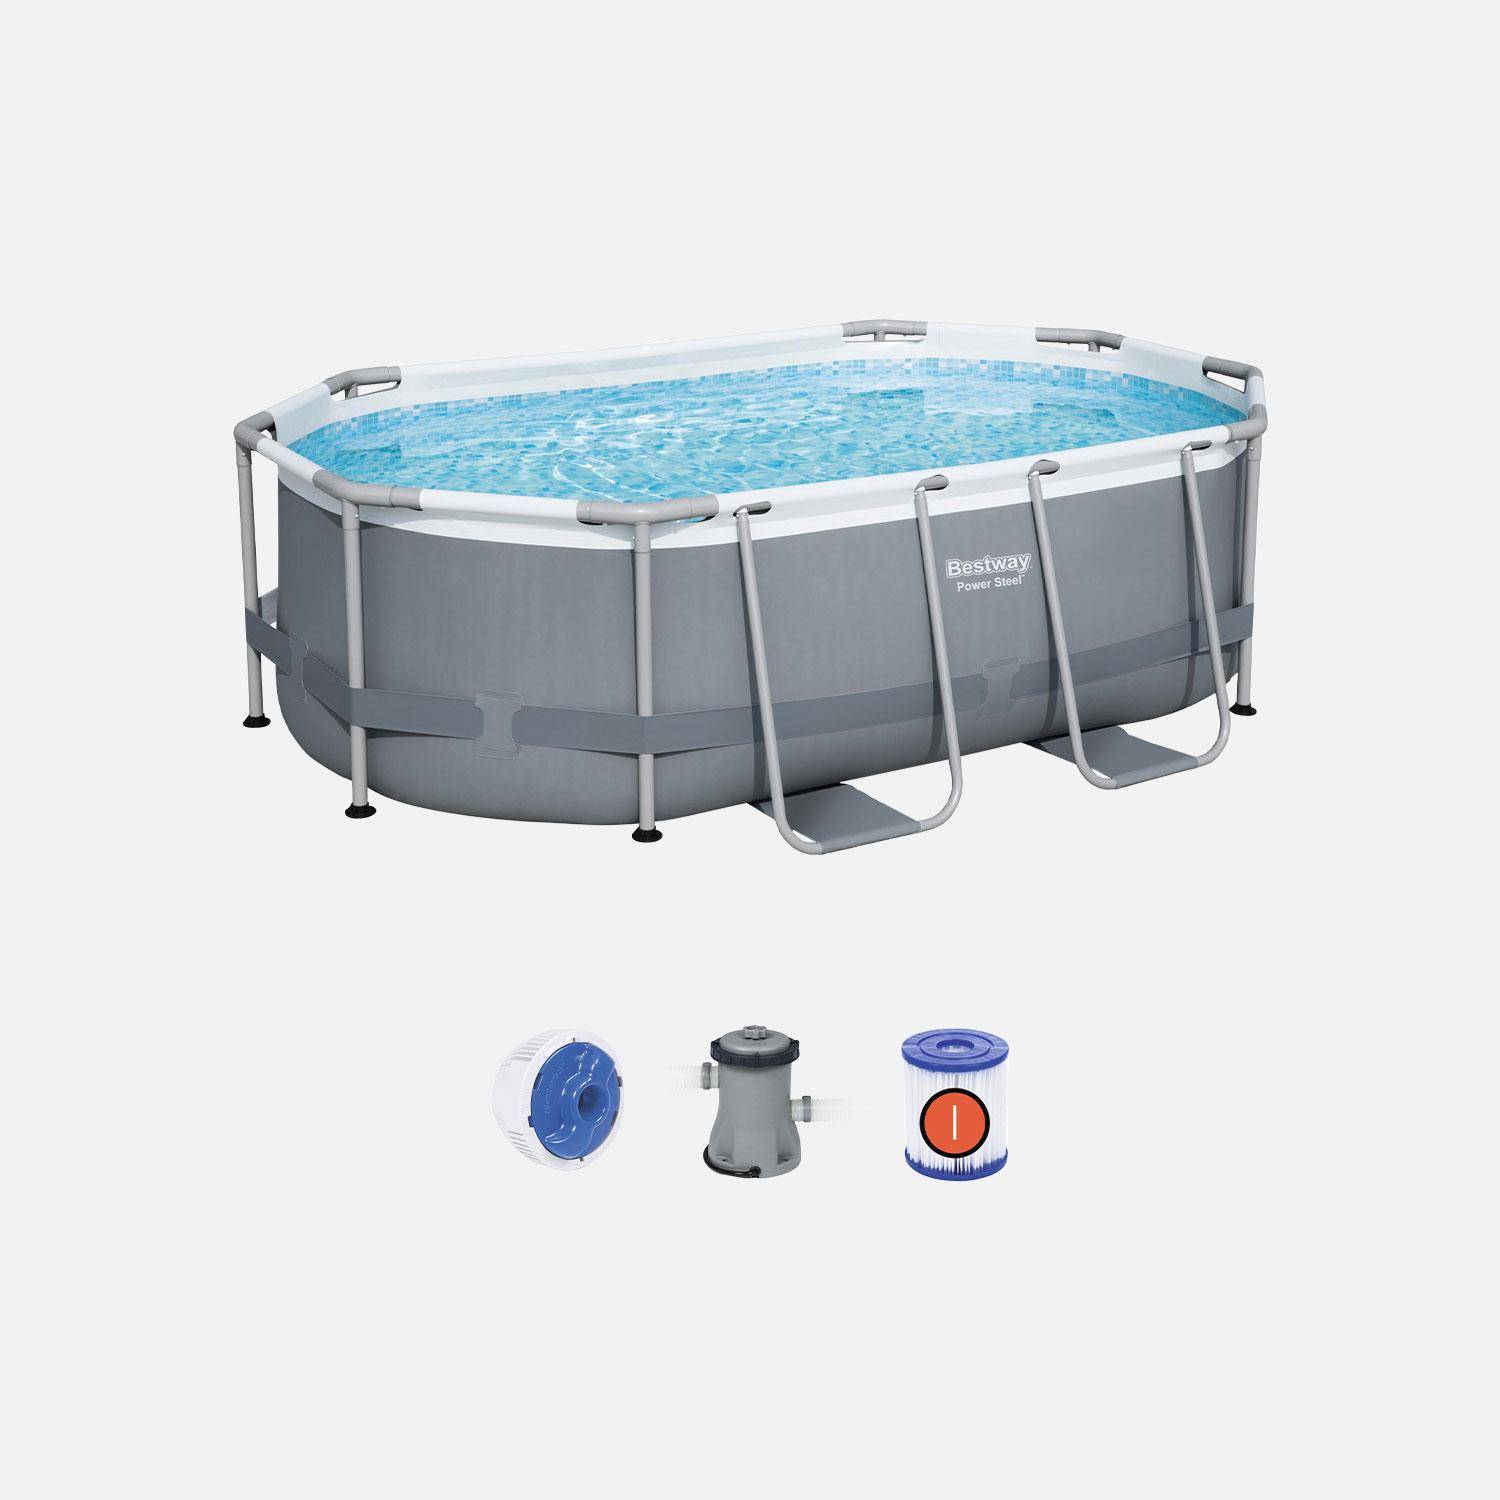 Kit completo piscina BESTWAY - Grigio Spinelle - piscina ovale tubolare 3x2 m, incl. pompa filtro e kit di riparazione  Photo1